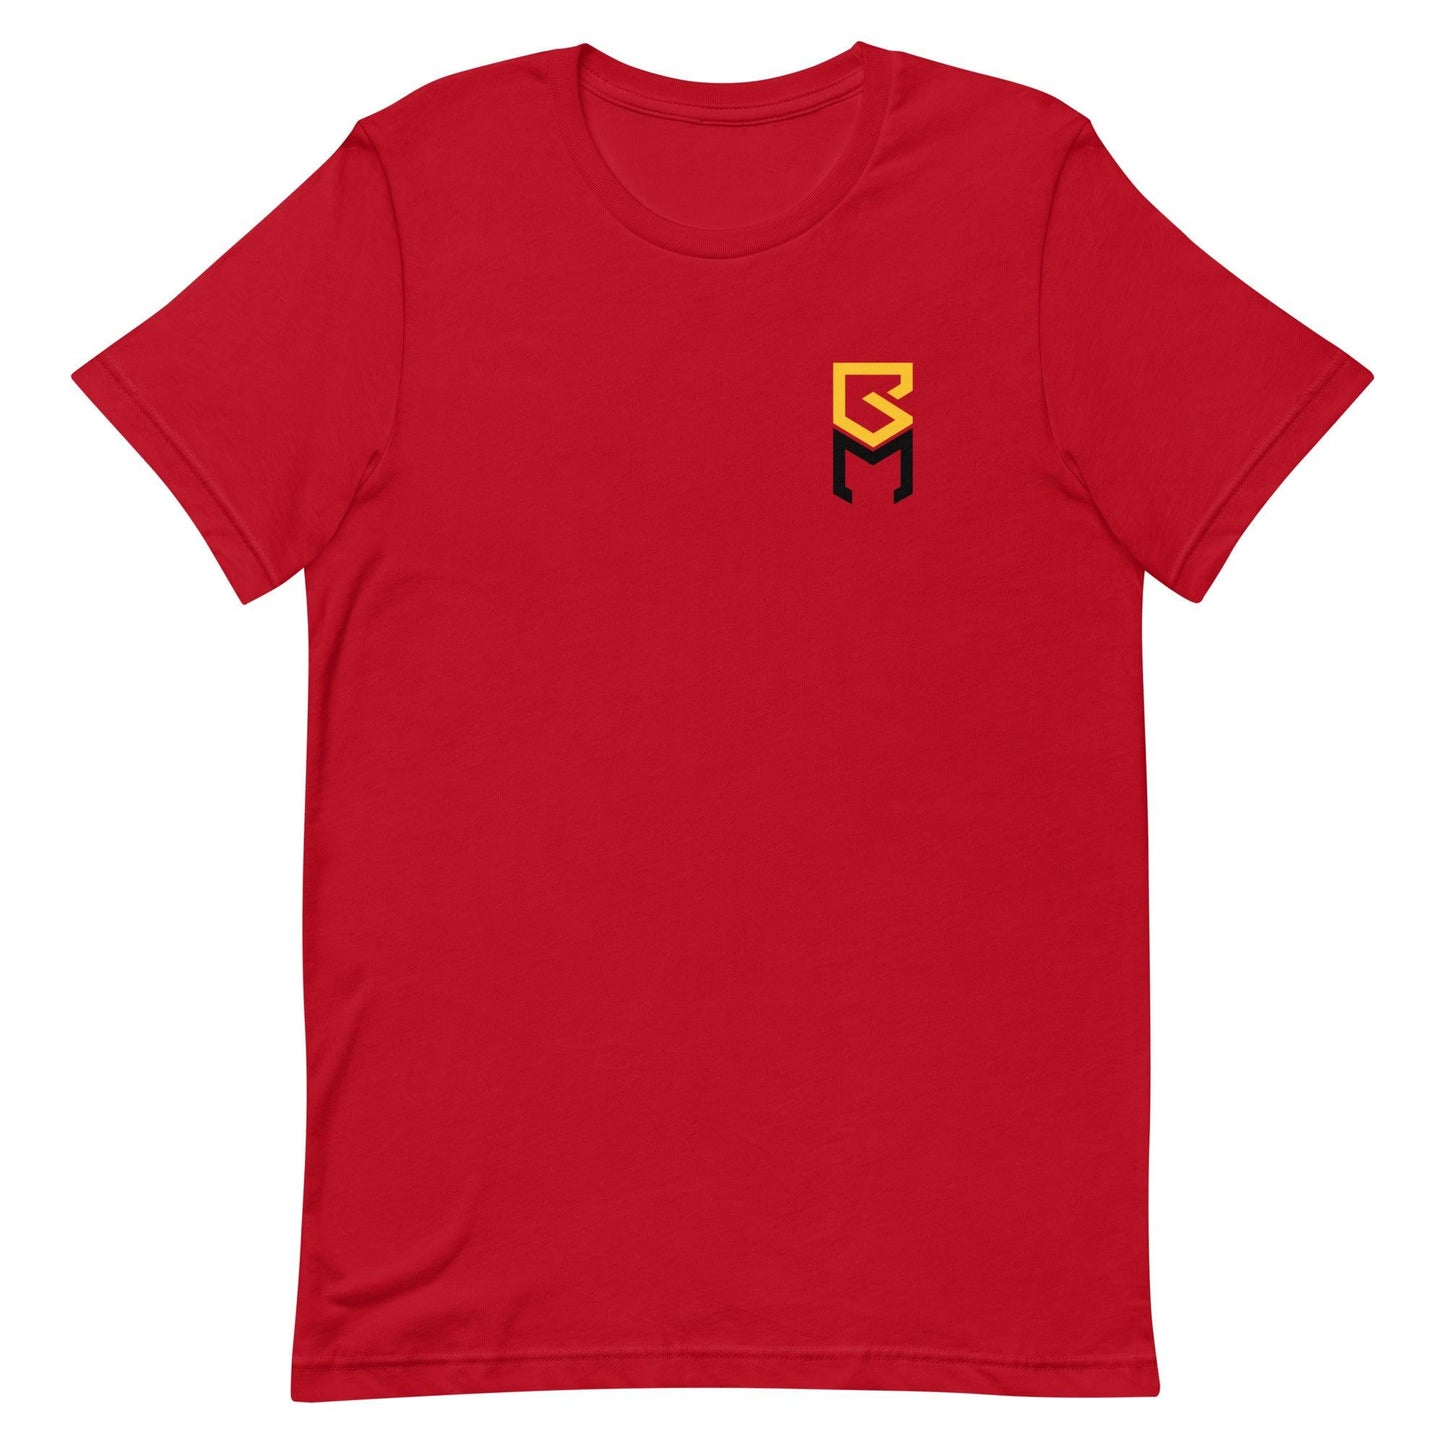 Brennan Malone "Essential" t-shirt - Fan Arch